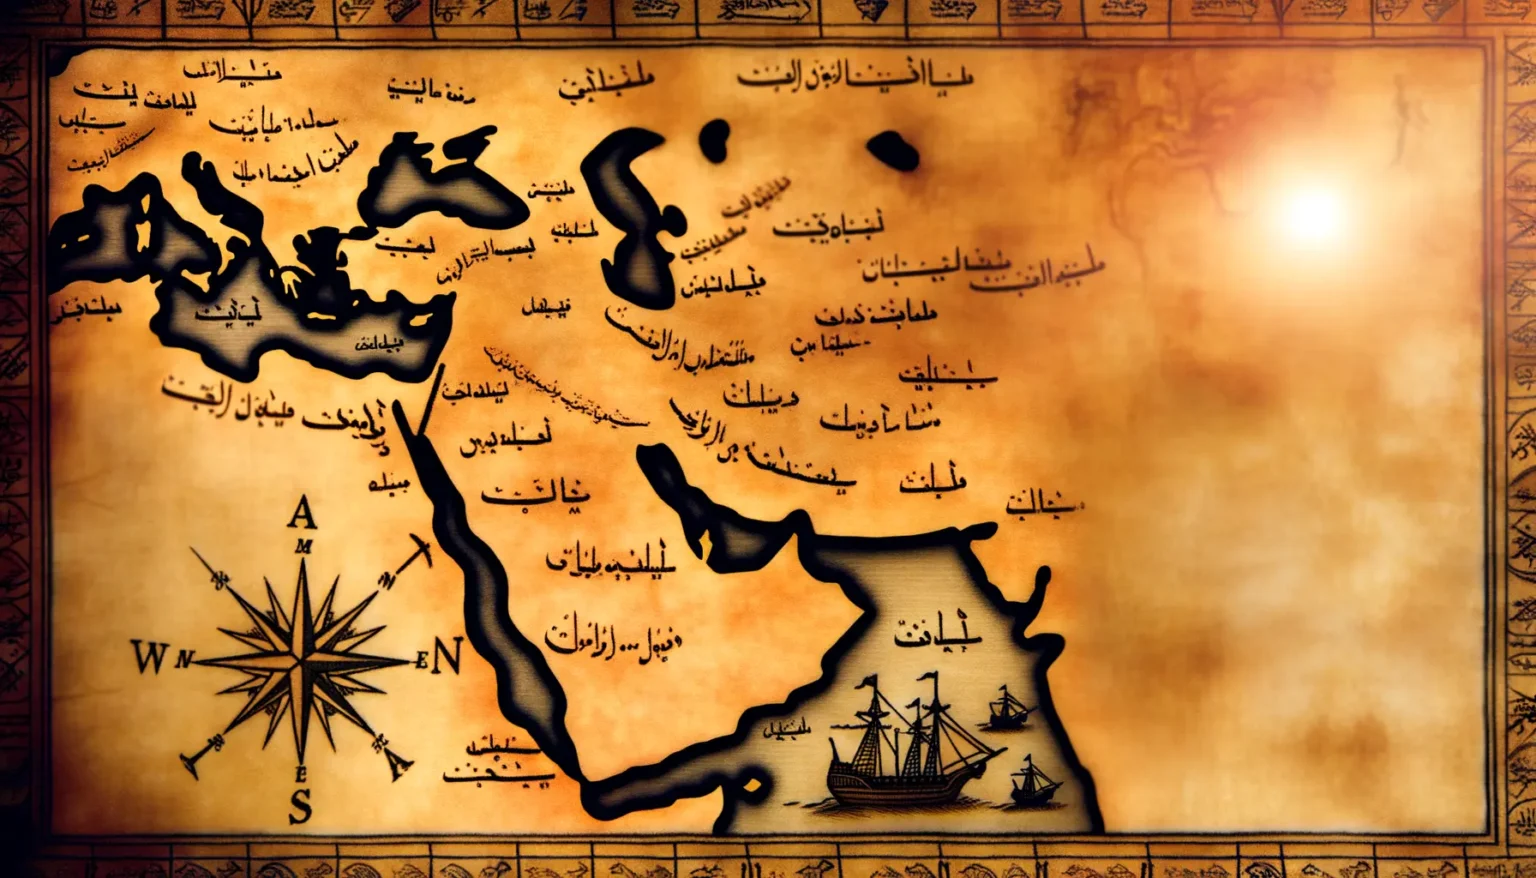 Eine stilisierte alte Karte mit Meer, Landmassen und Segelschiffen, begleitet von arabischer Schrift und einem Kompassrosen-Design im Vordergrund, all das in warmen Sepiatönen gehalten mit einem leuchtenen Punkt, der eine Sonne darstellen könnte, am rechten Rand.